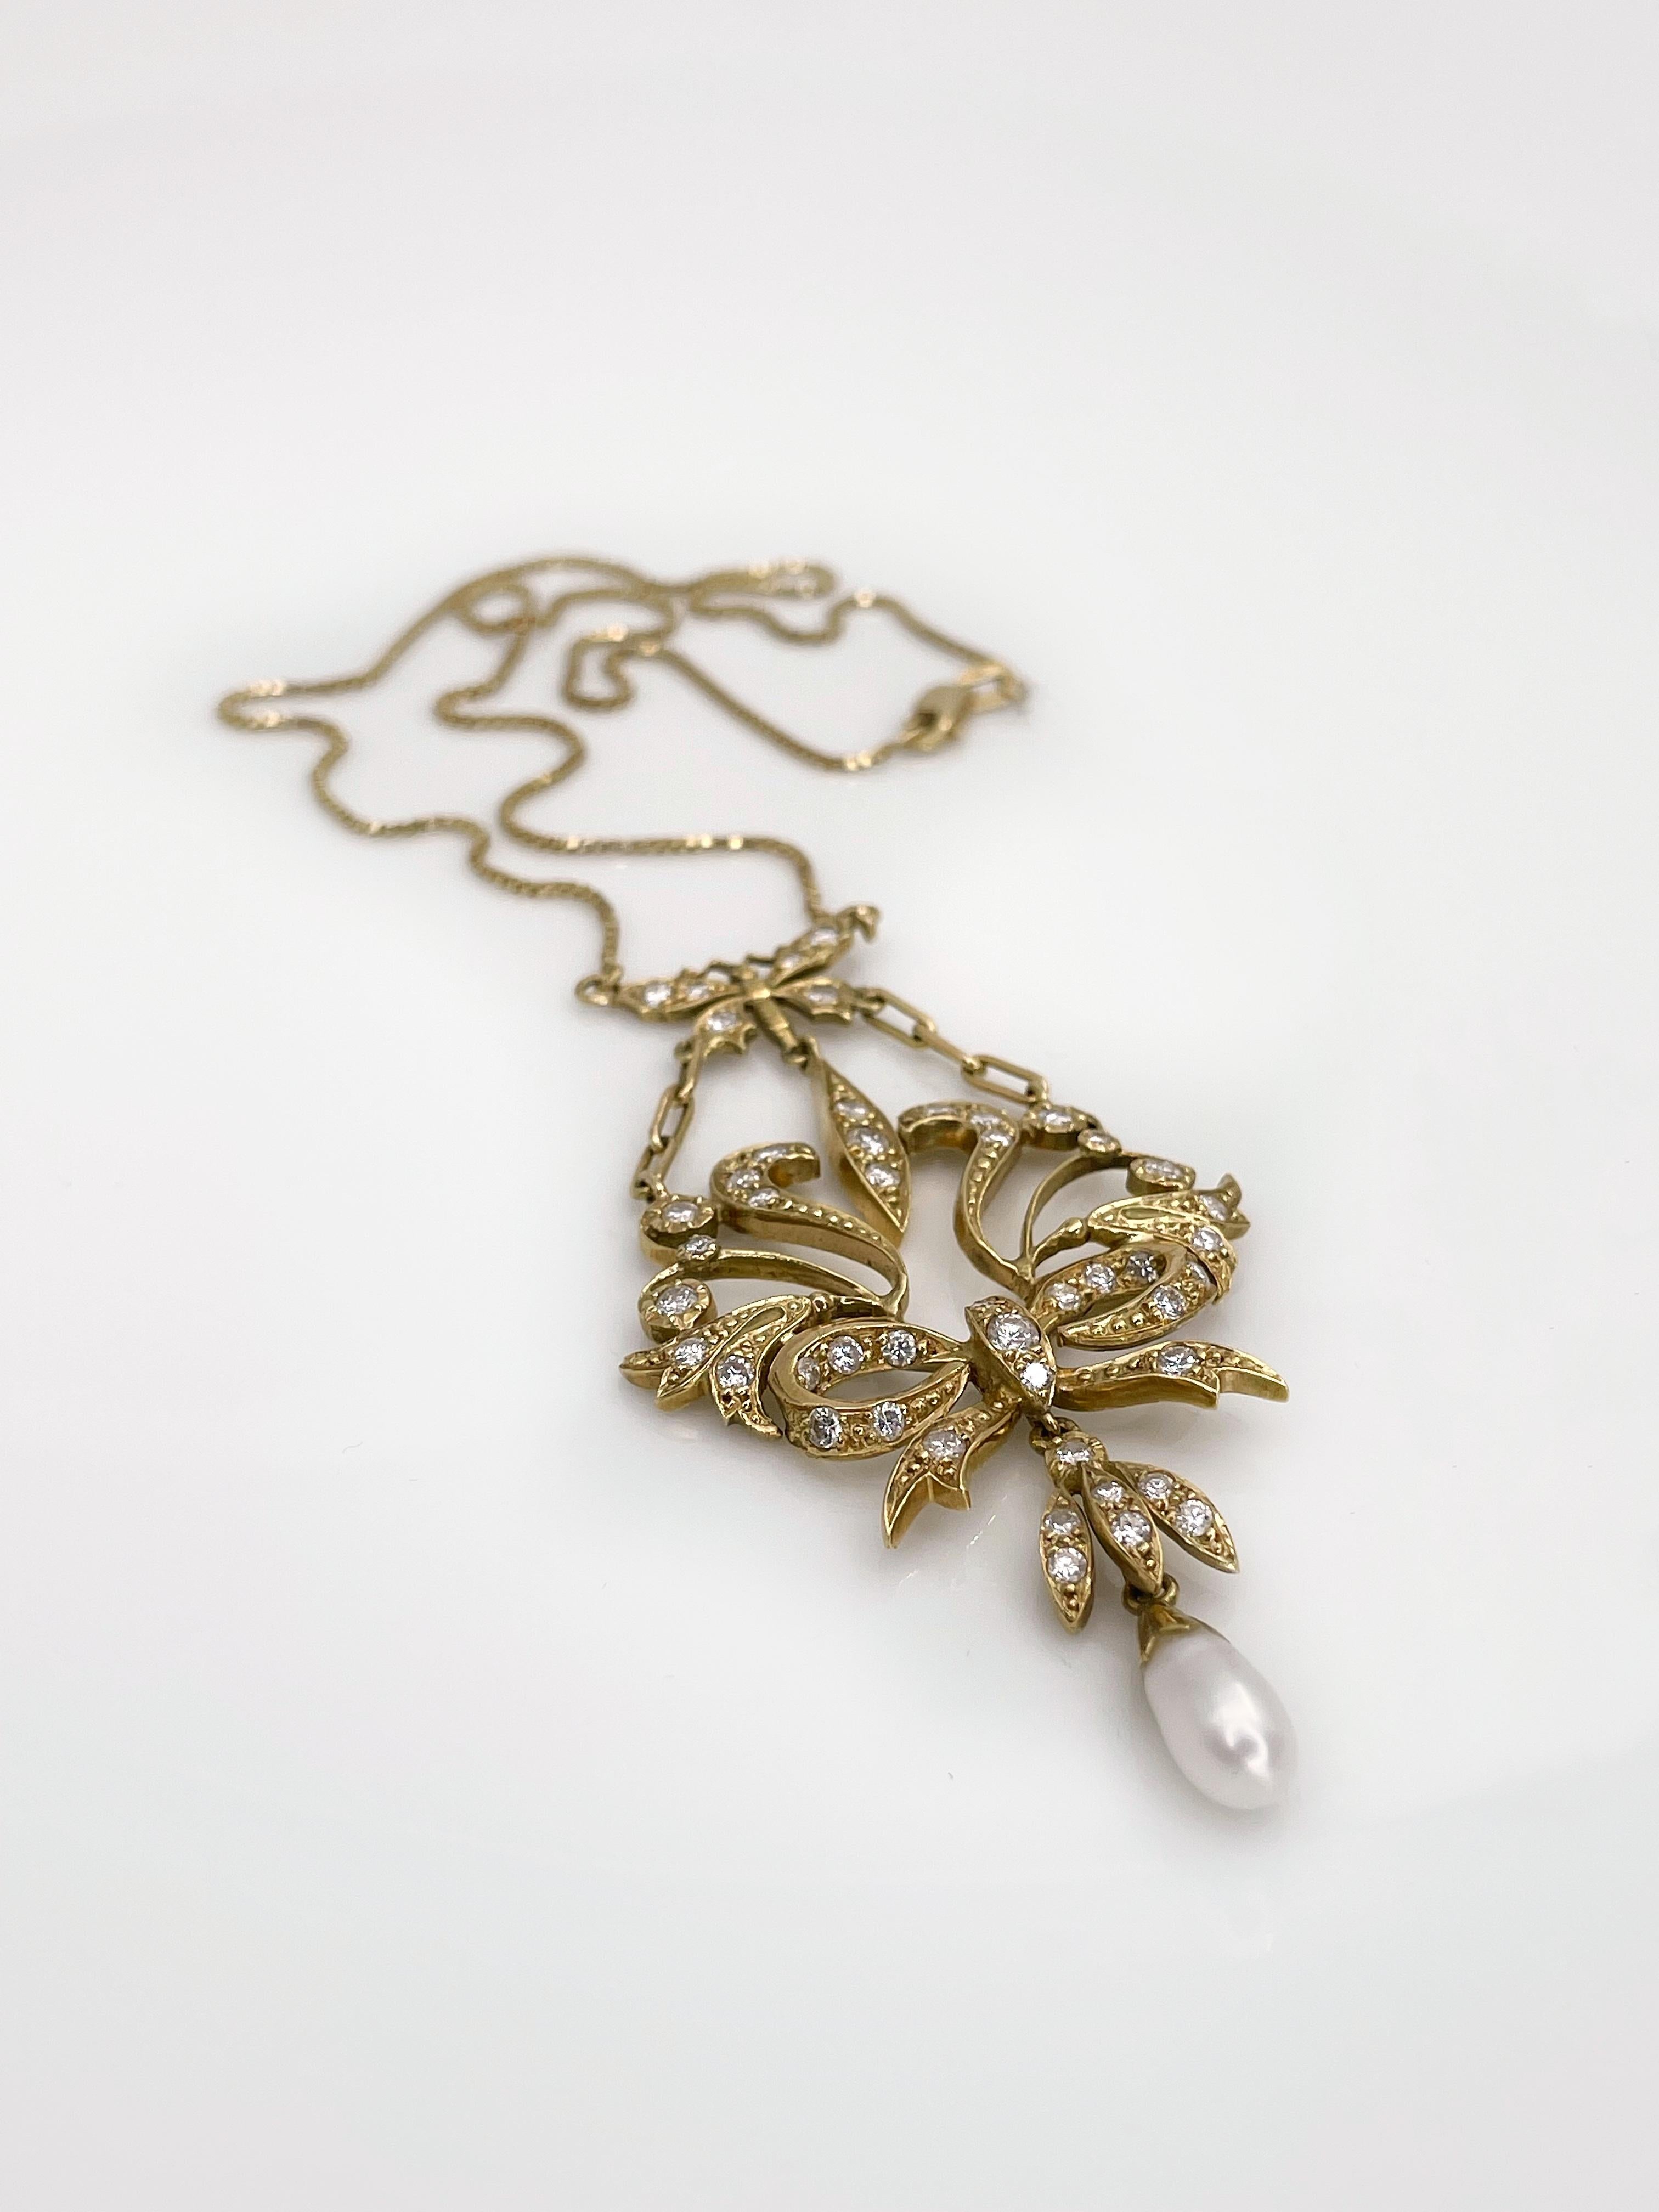 vintage lavalier necklace